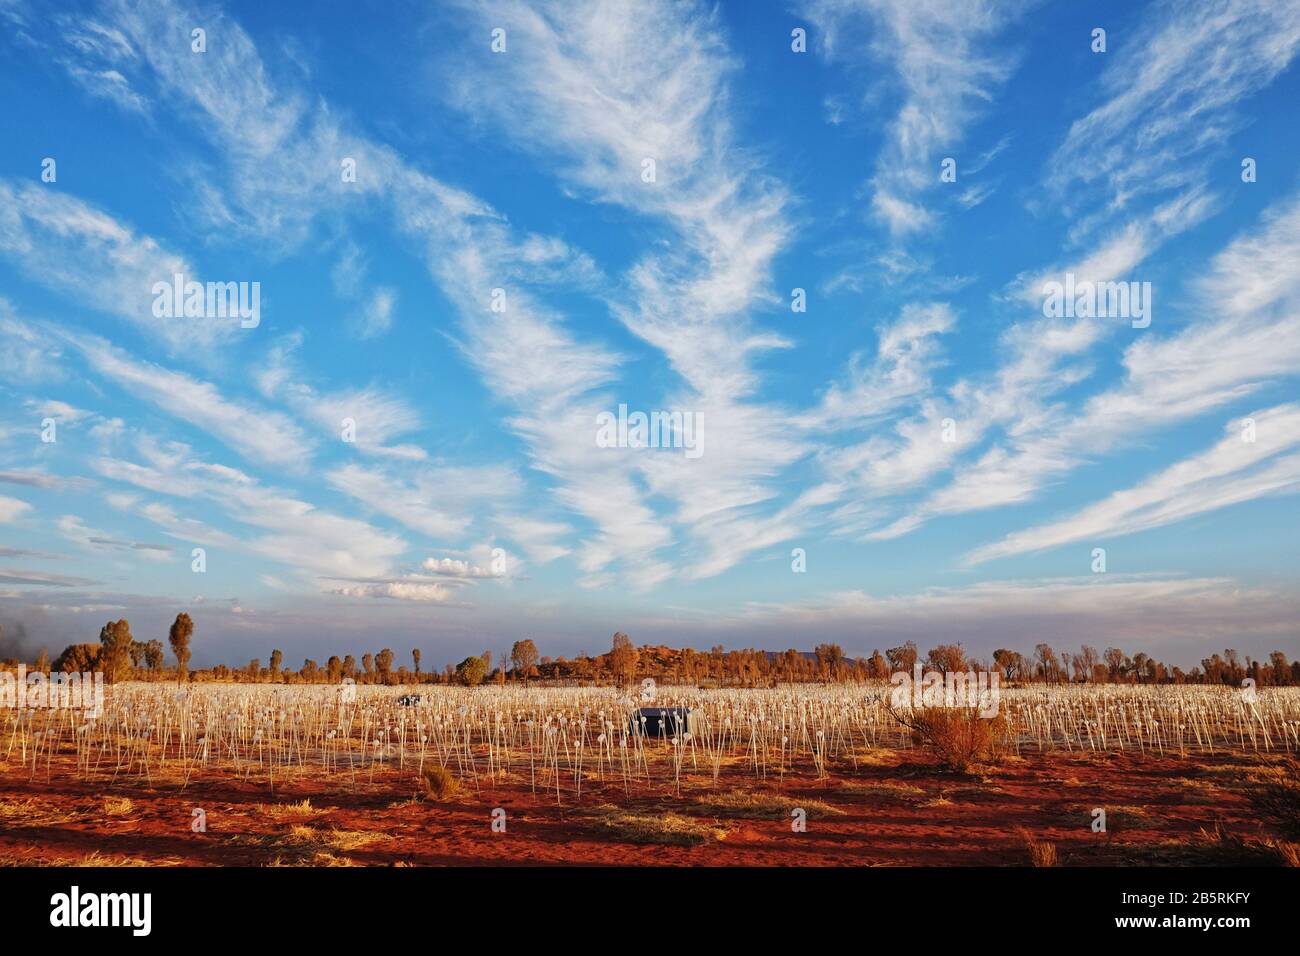 Federähnliche Zirruswolken über dem Himmel, das Feld des Lichts mit niedrigen Hügeln und Desert Oaks, während die Sonne lange Schatten über roten Boden wirft, N.T., Australien Stockfoto